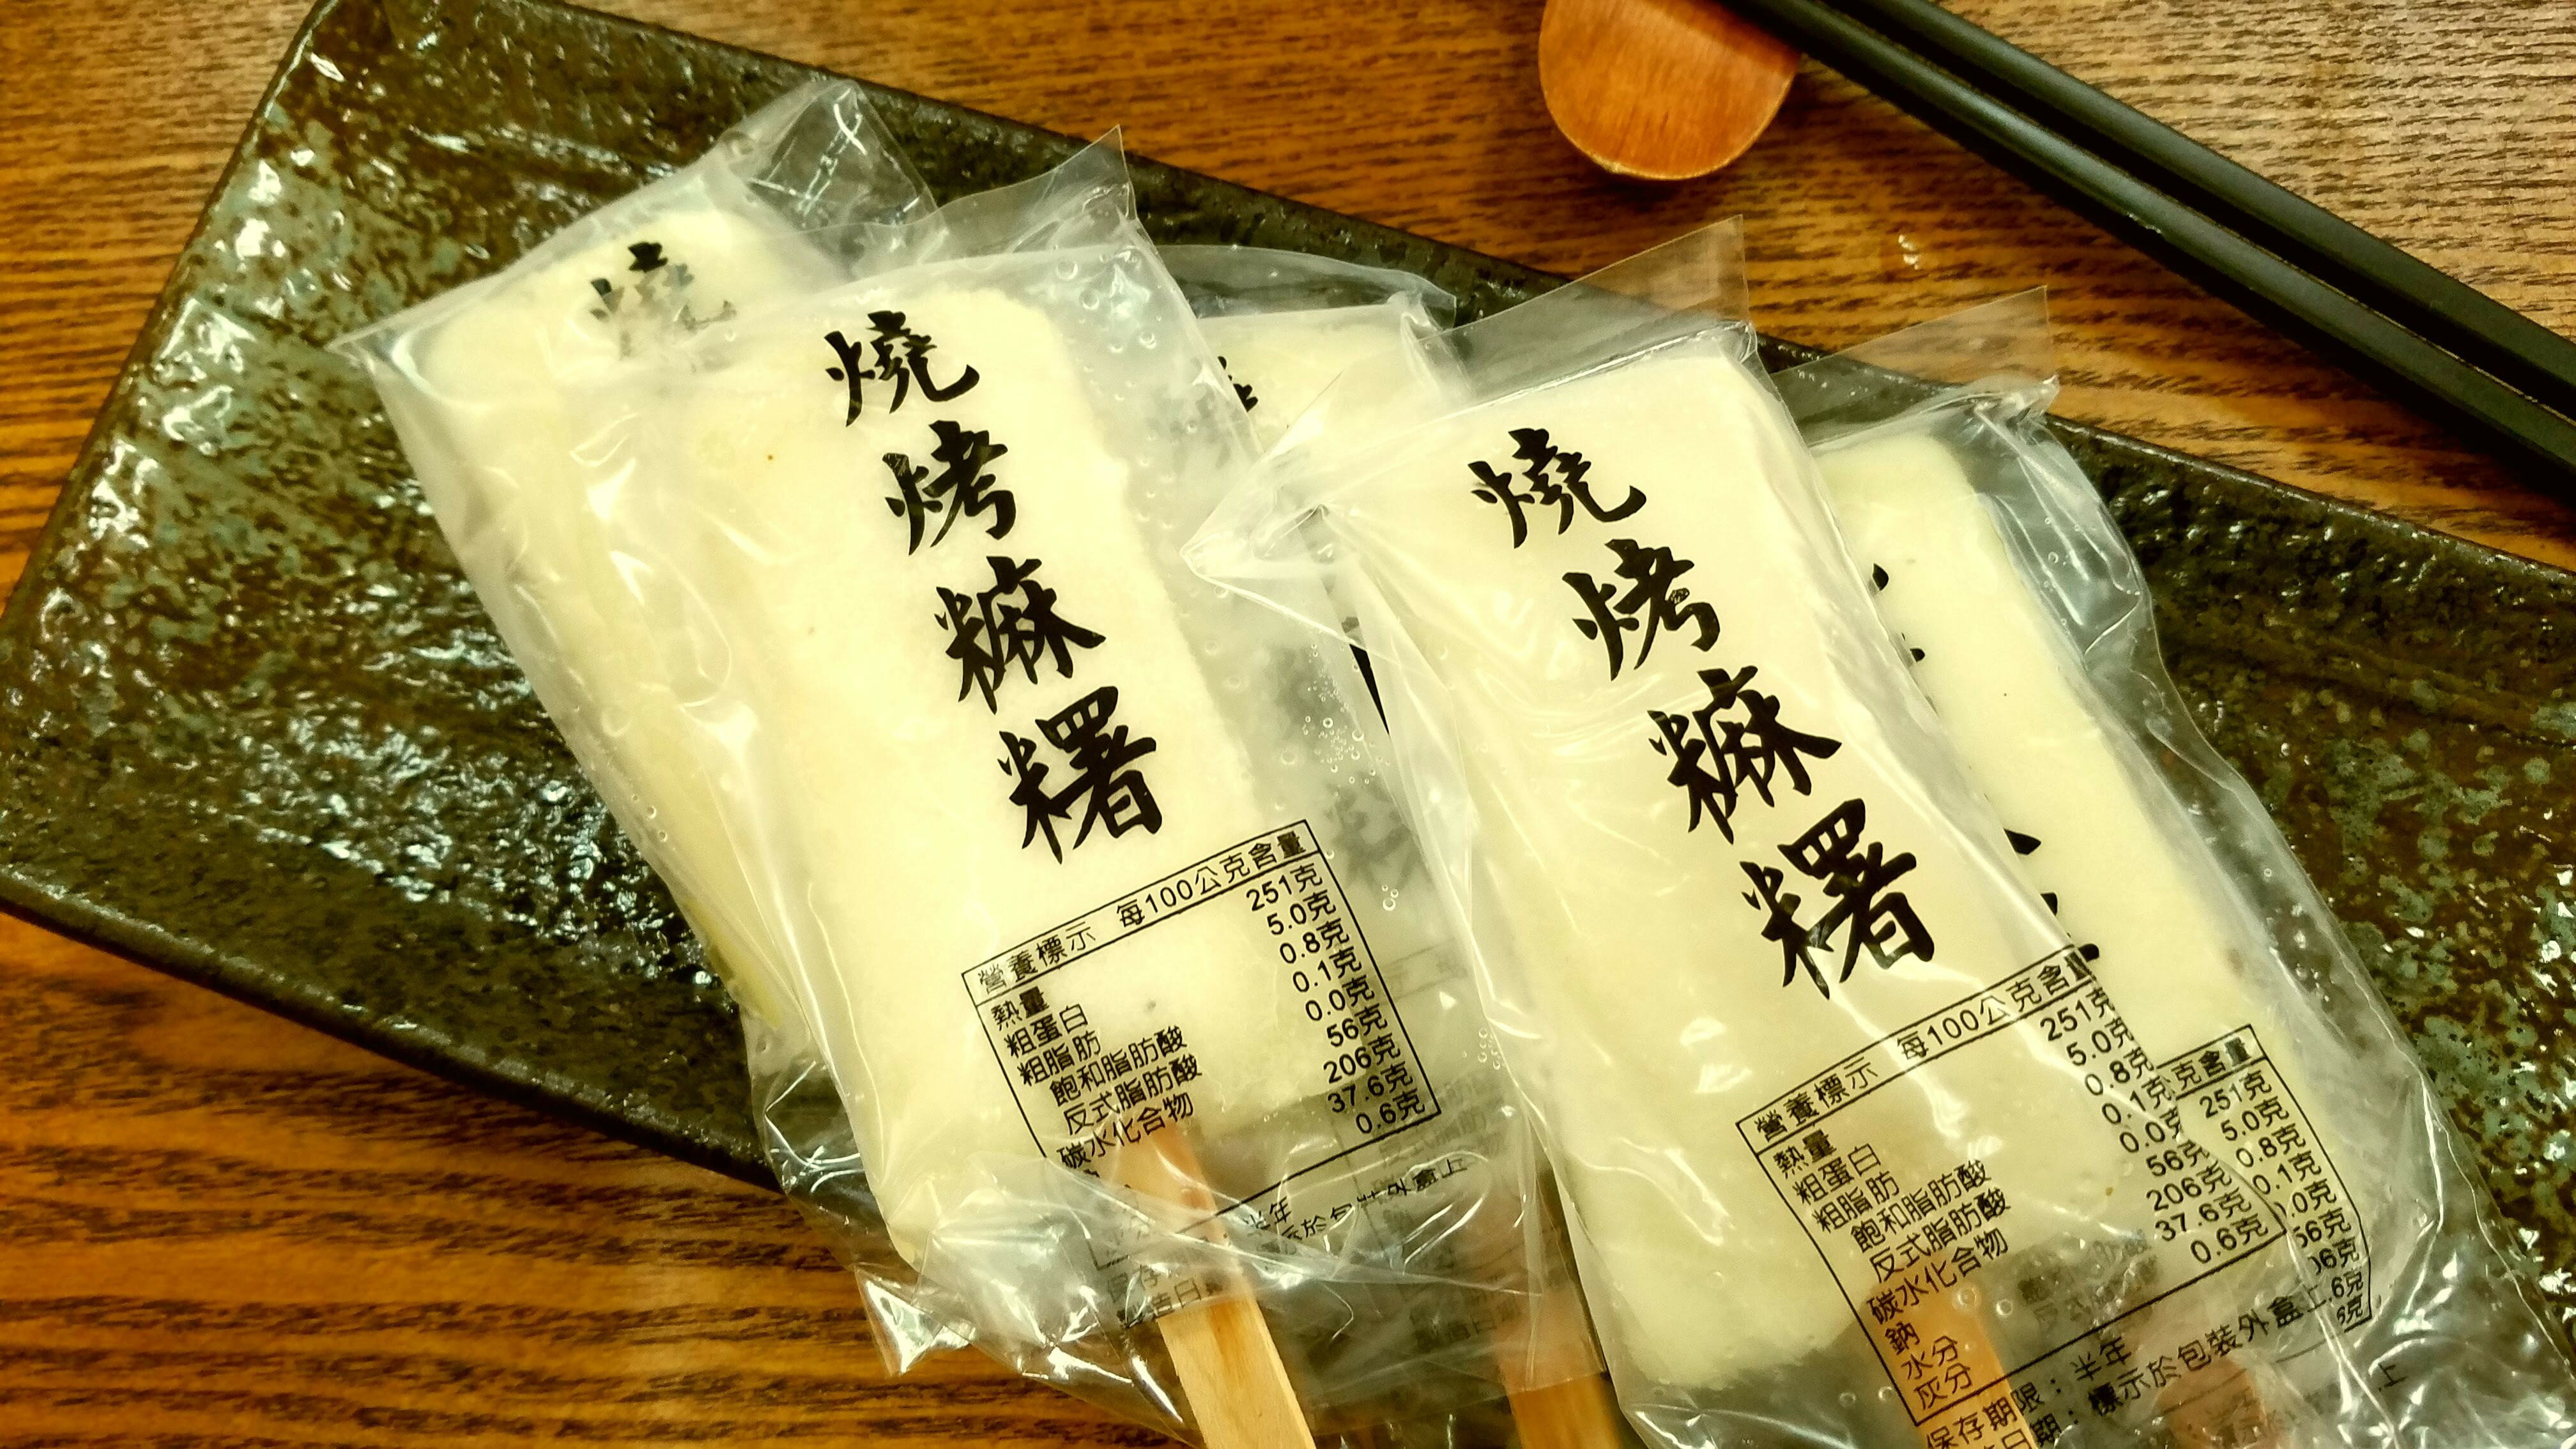 燒烤麻糬 5入【利津食品行】點心 甜點 燒烤 炸物 氣炸鍋 冷凍食品